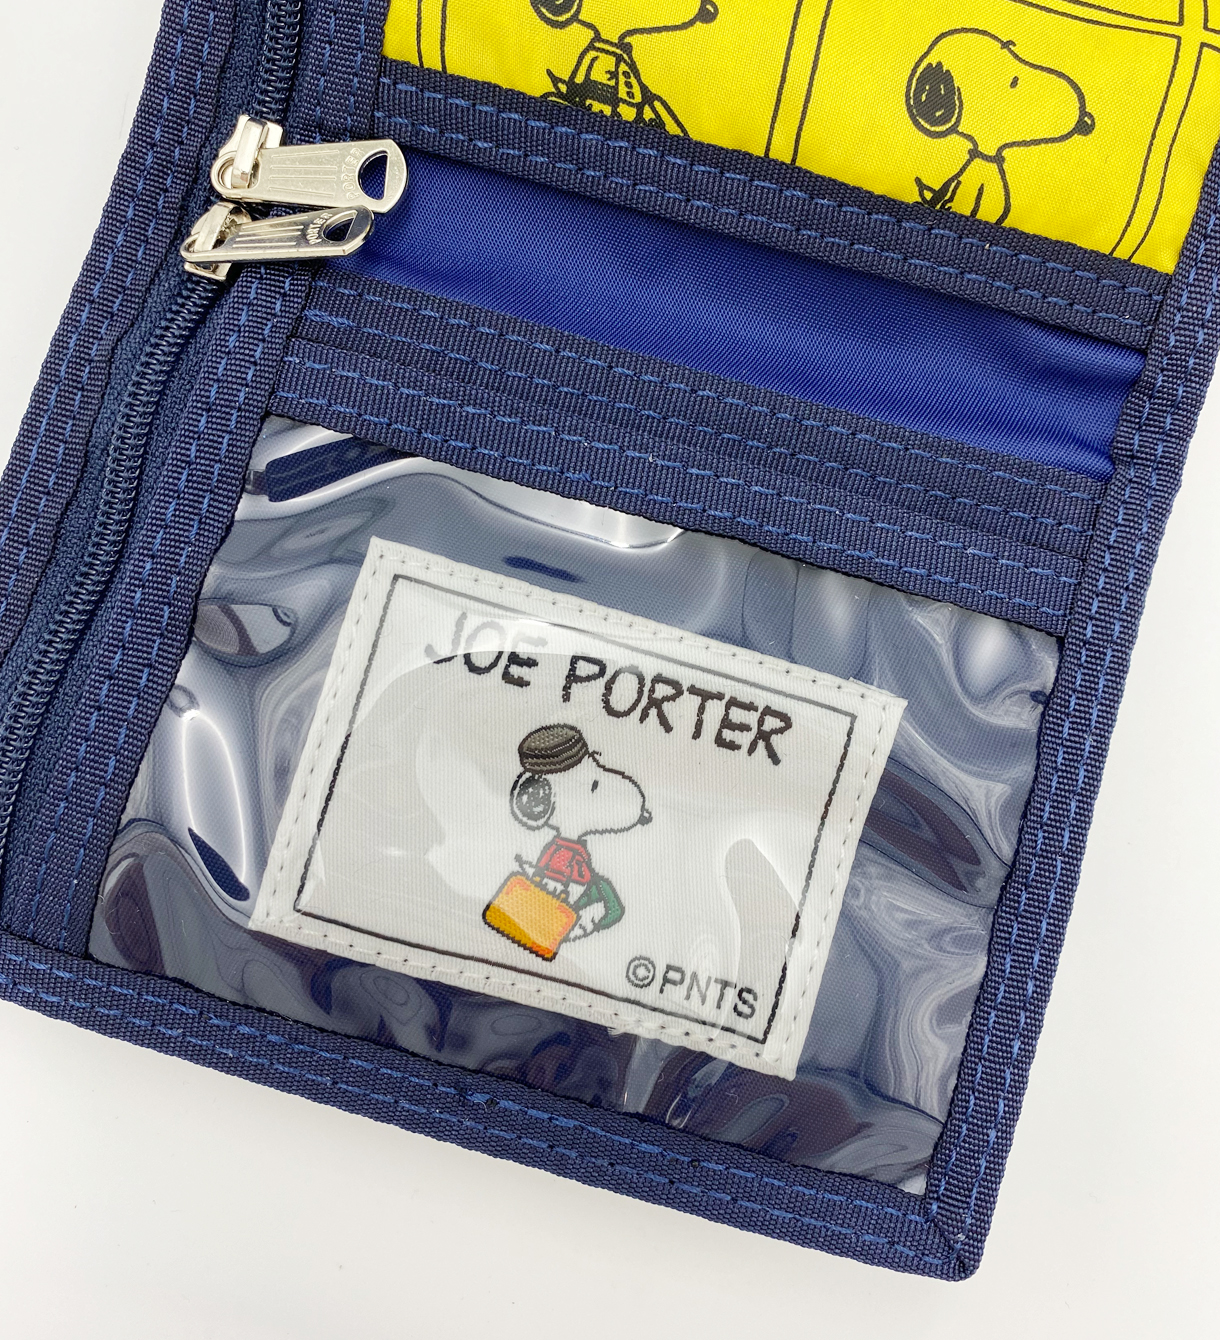 Joe Porter Wallet Peanuts Trailer Shop Online Store